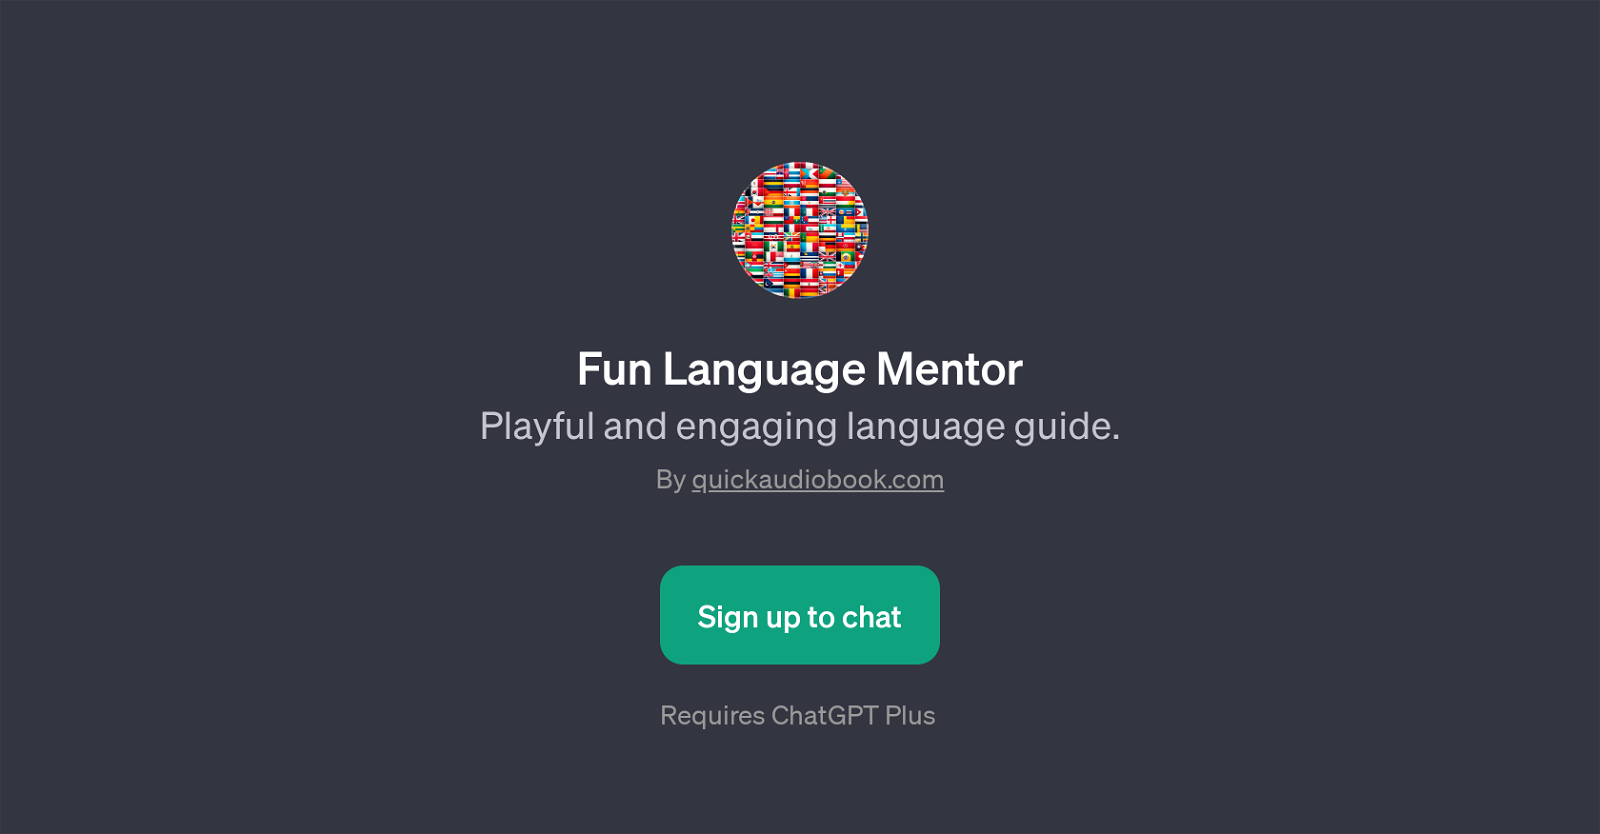 Fun Language Mentor website